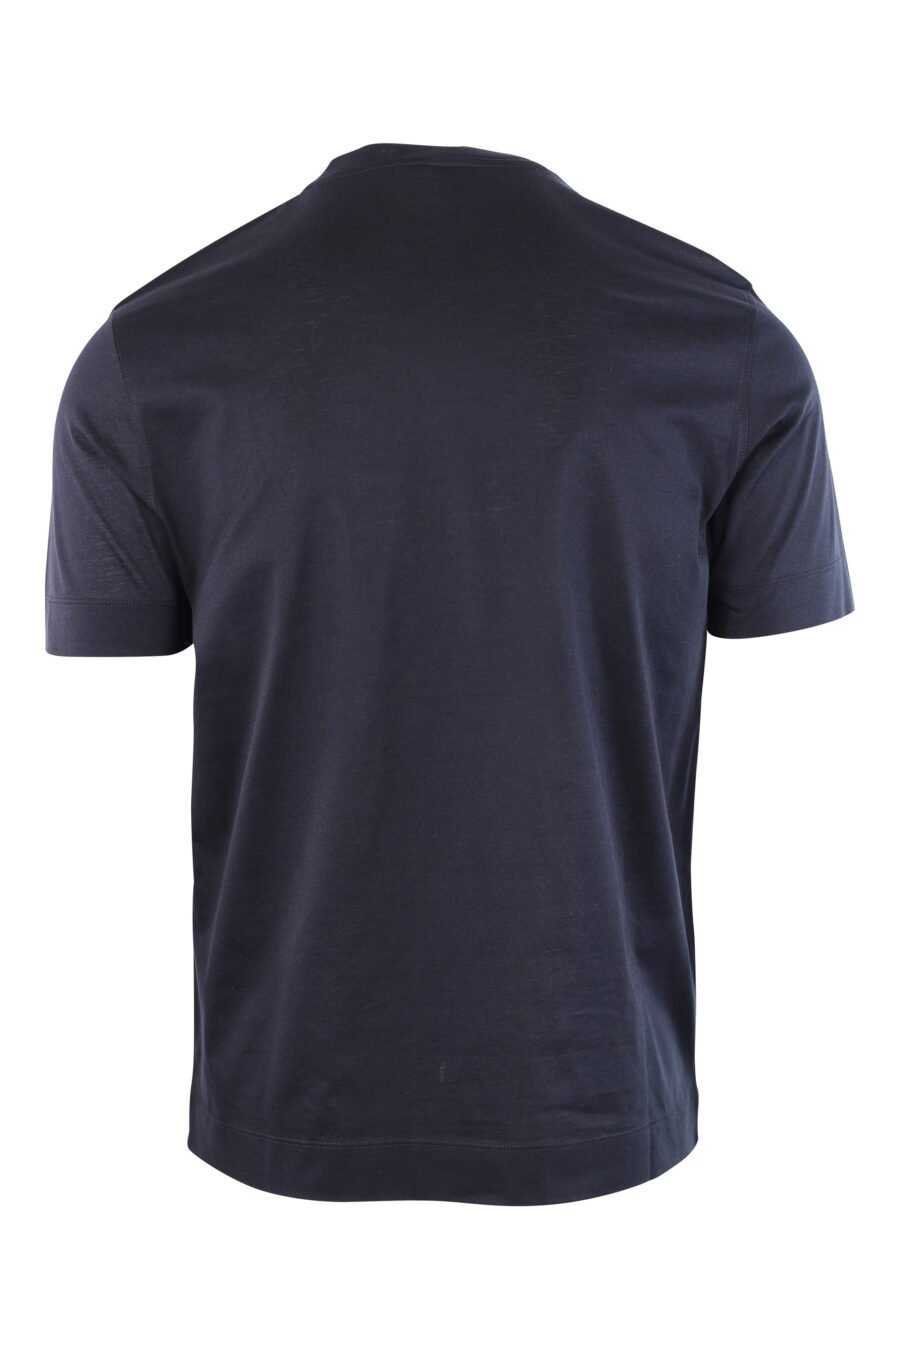 Camiseta azul oscura con logo centrado bordado - IMG 3782